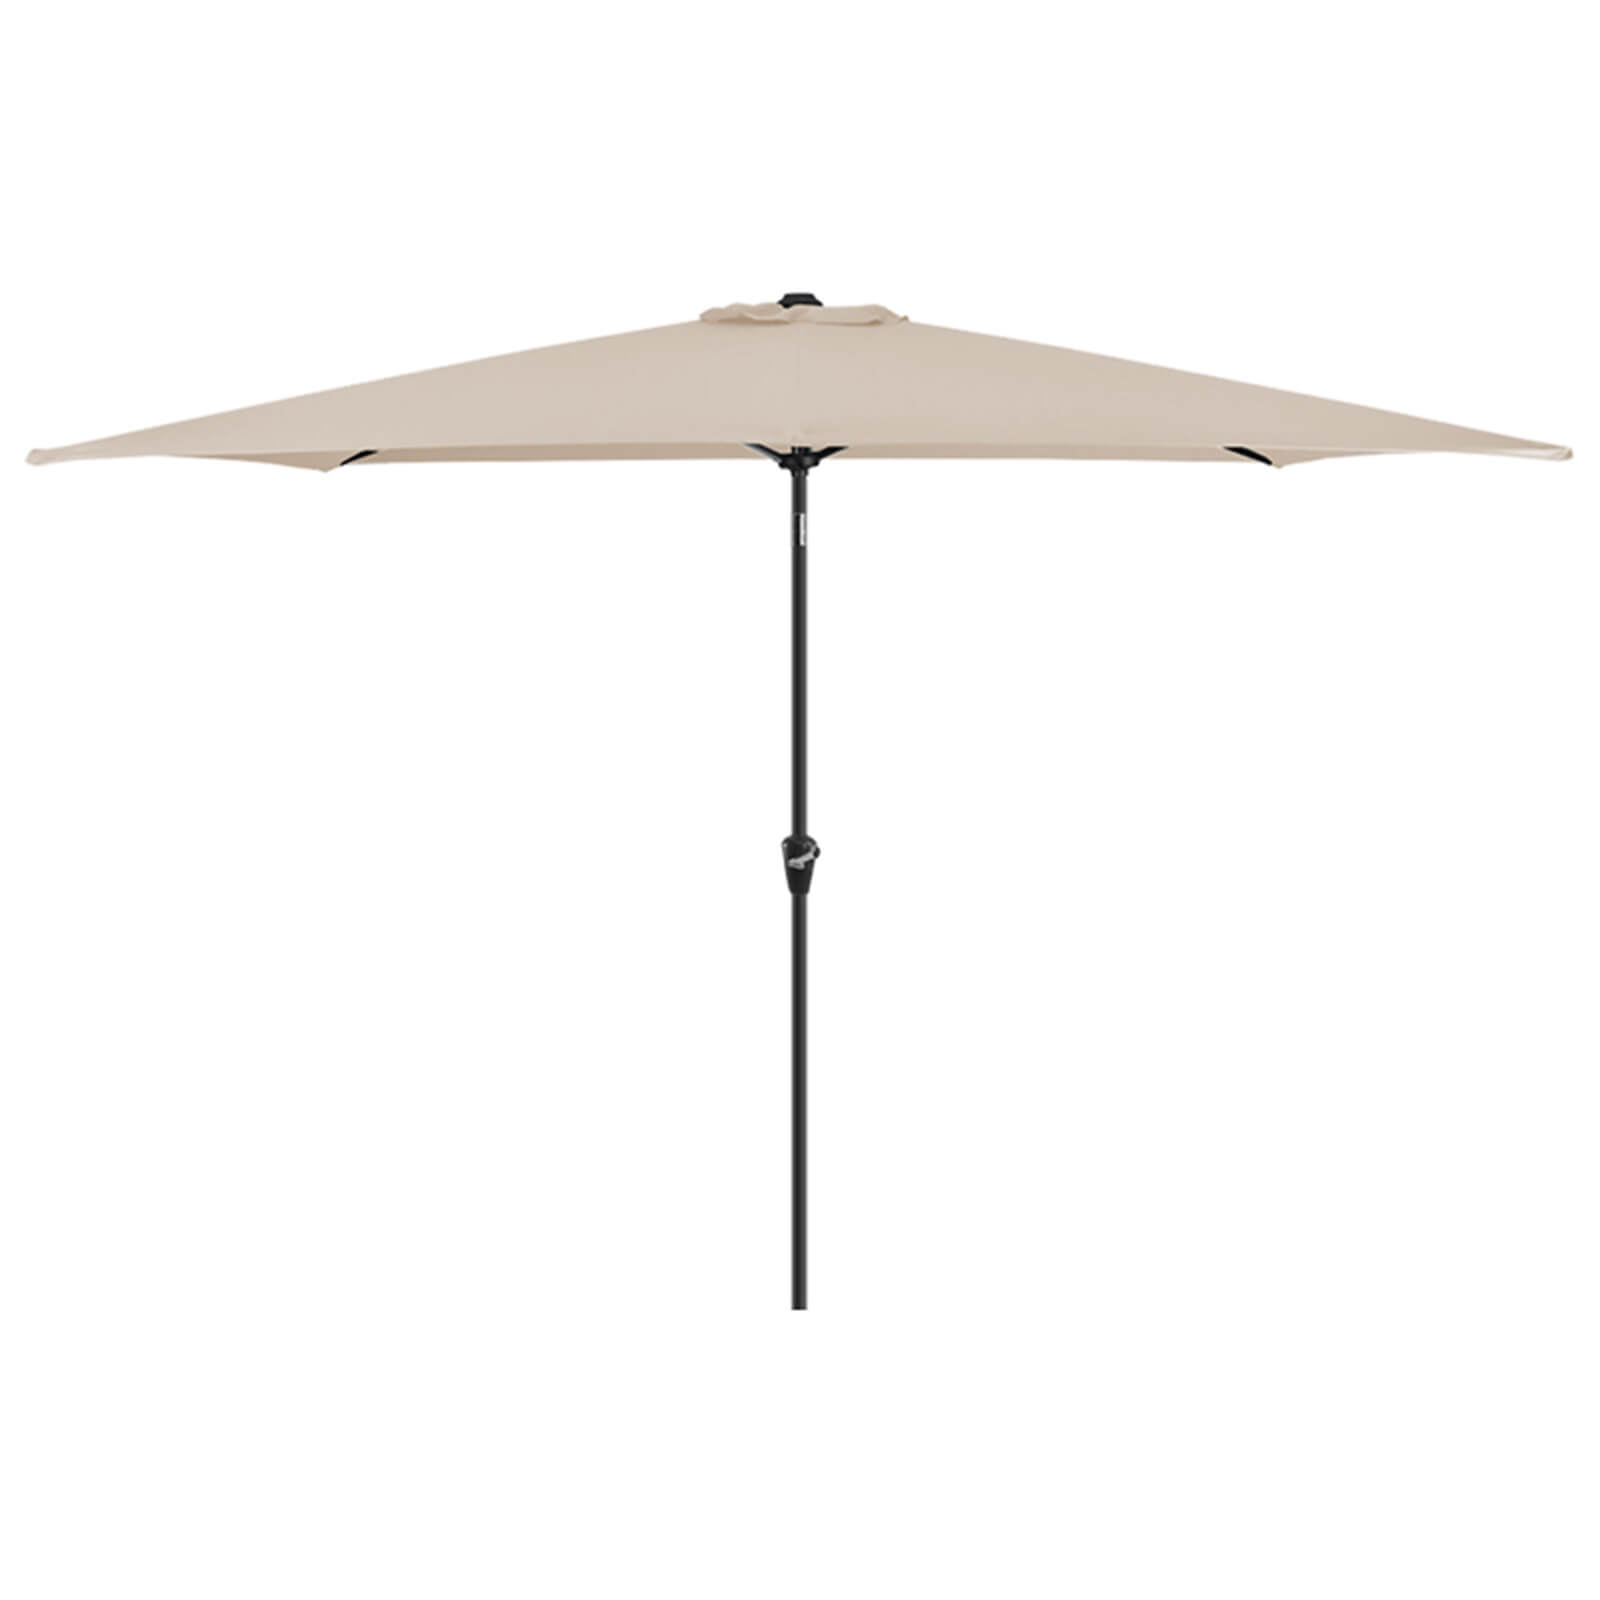 Aluminium Umbrella Parasol - 3x2m - Beige